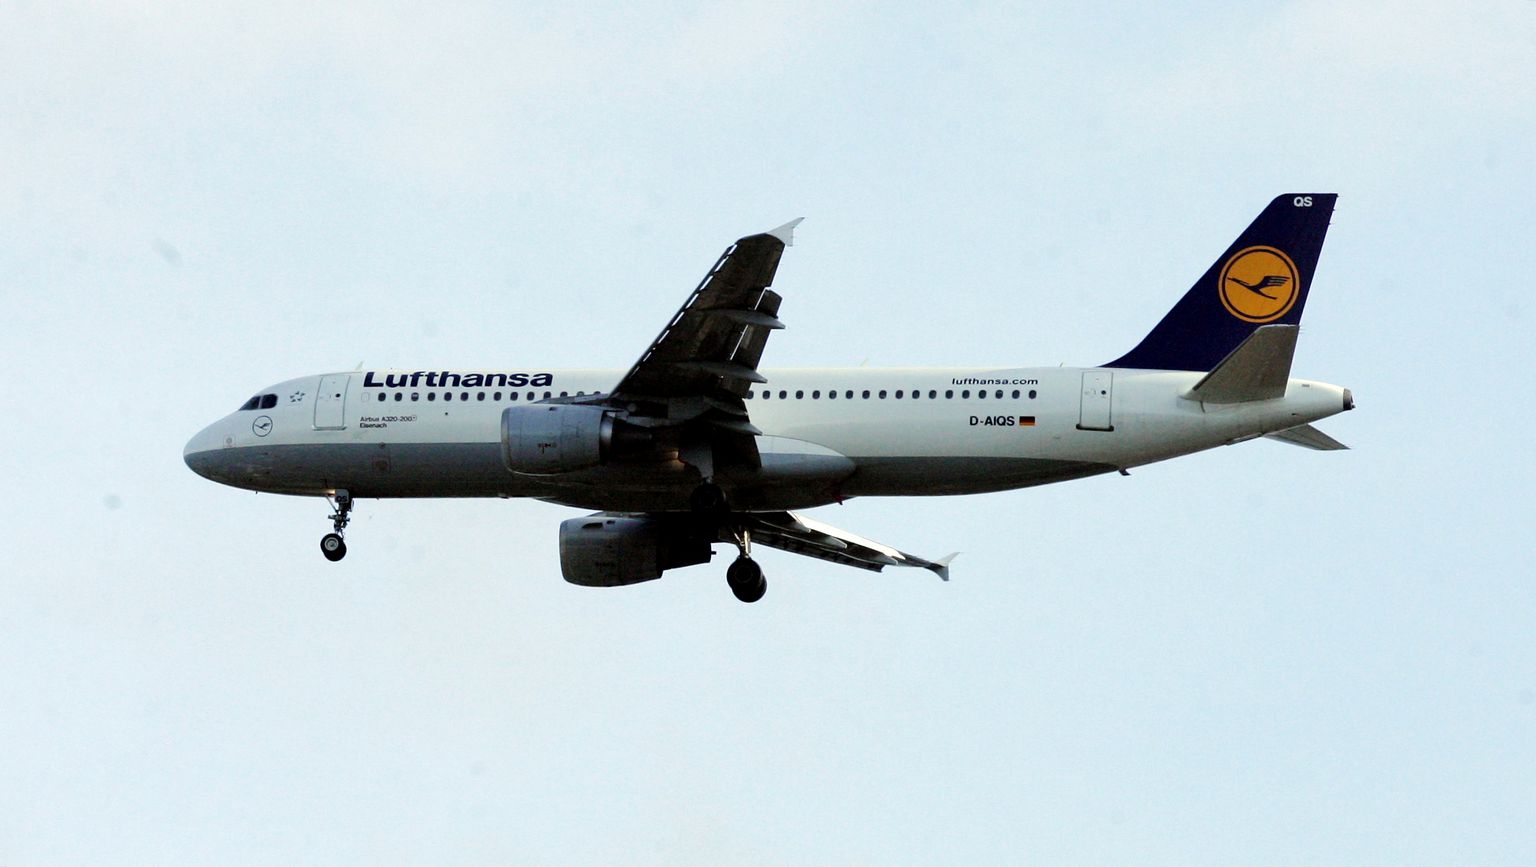 Lufthansa lennuk Tallinna lennujaama lähistel. Foto TOOMAS HUIK/POSTIMEES